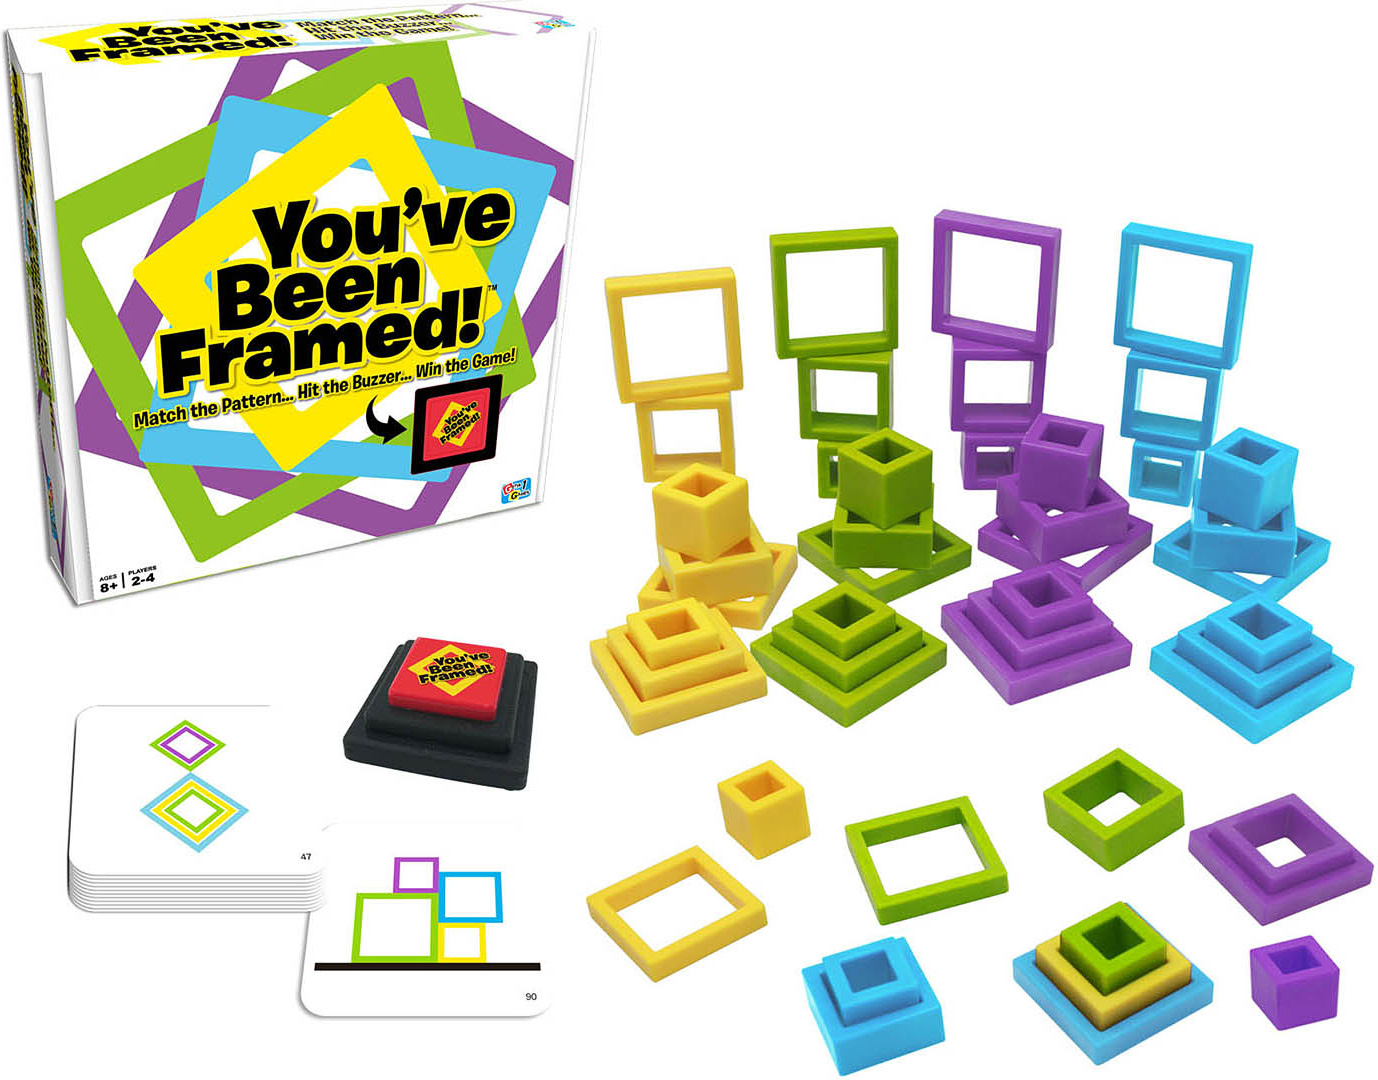 You've Been Framed!